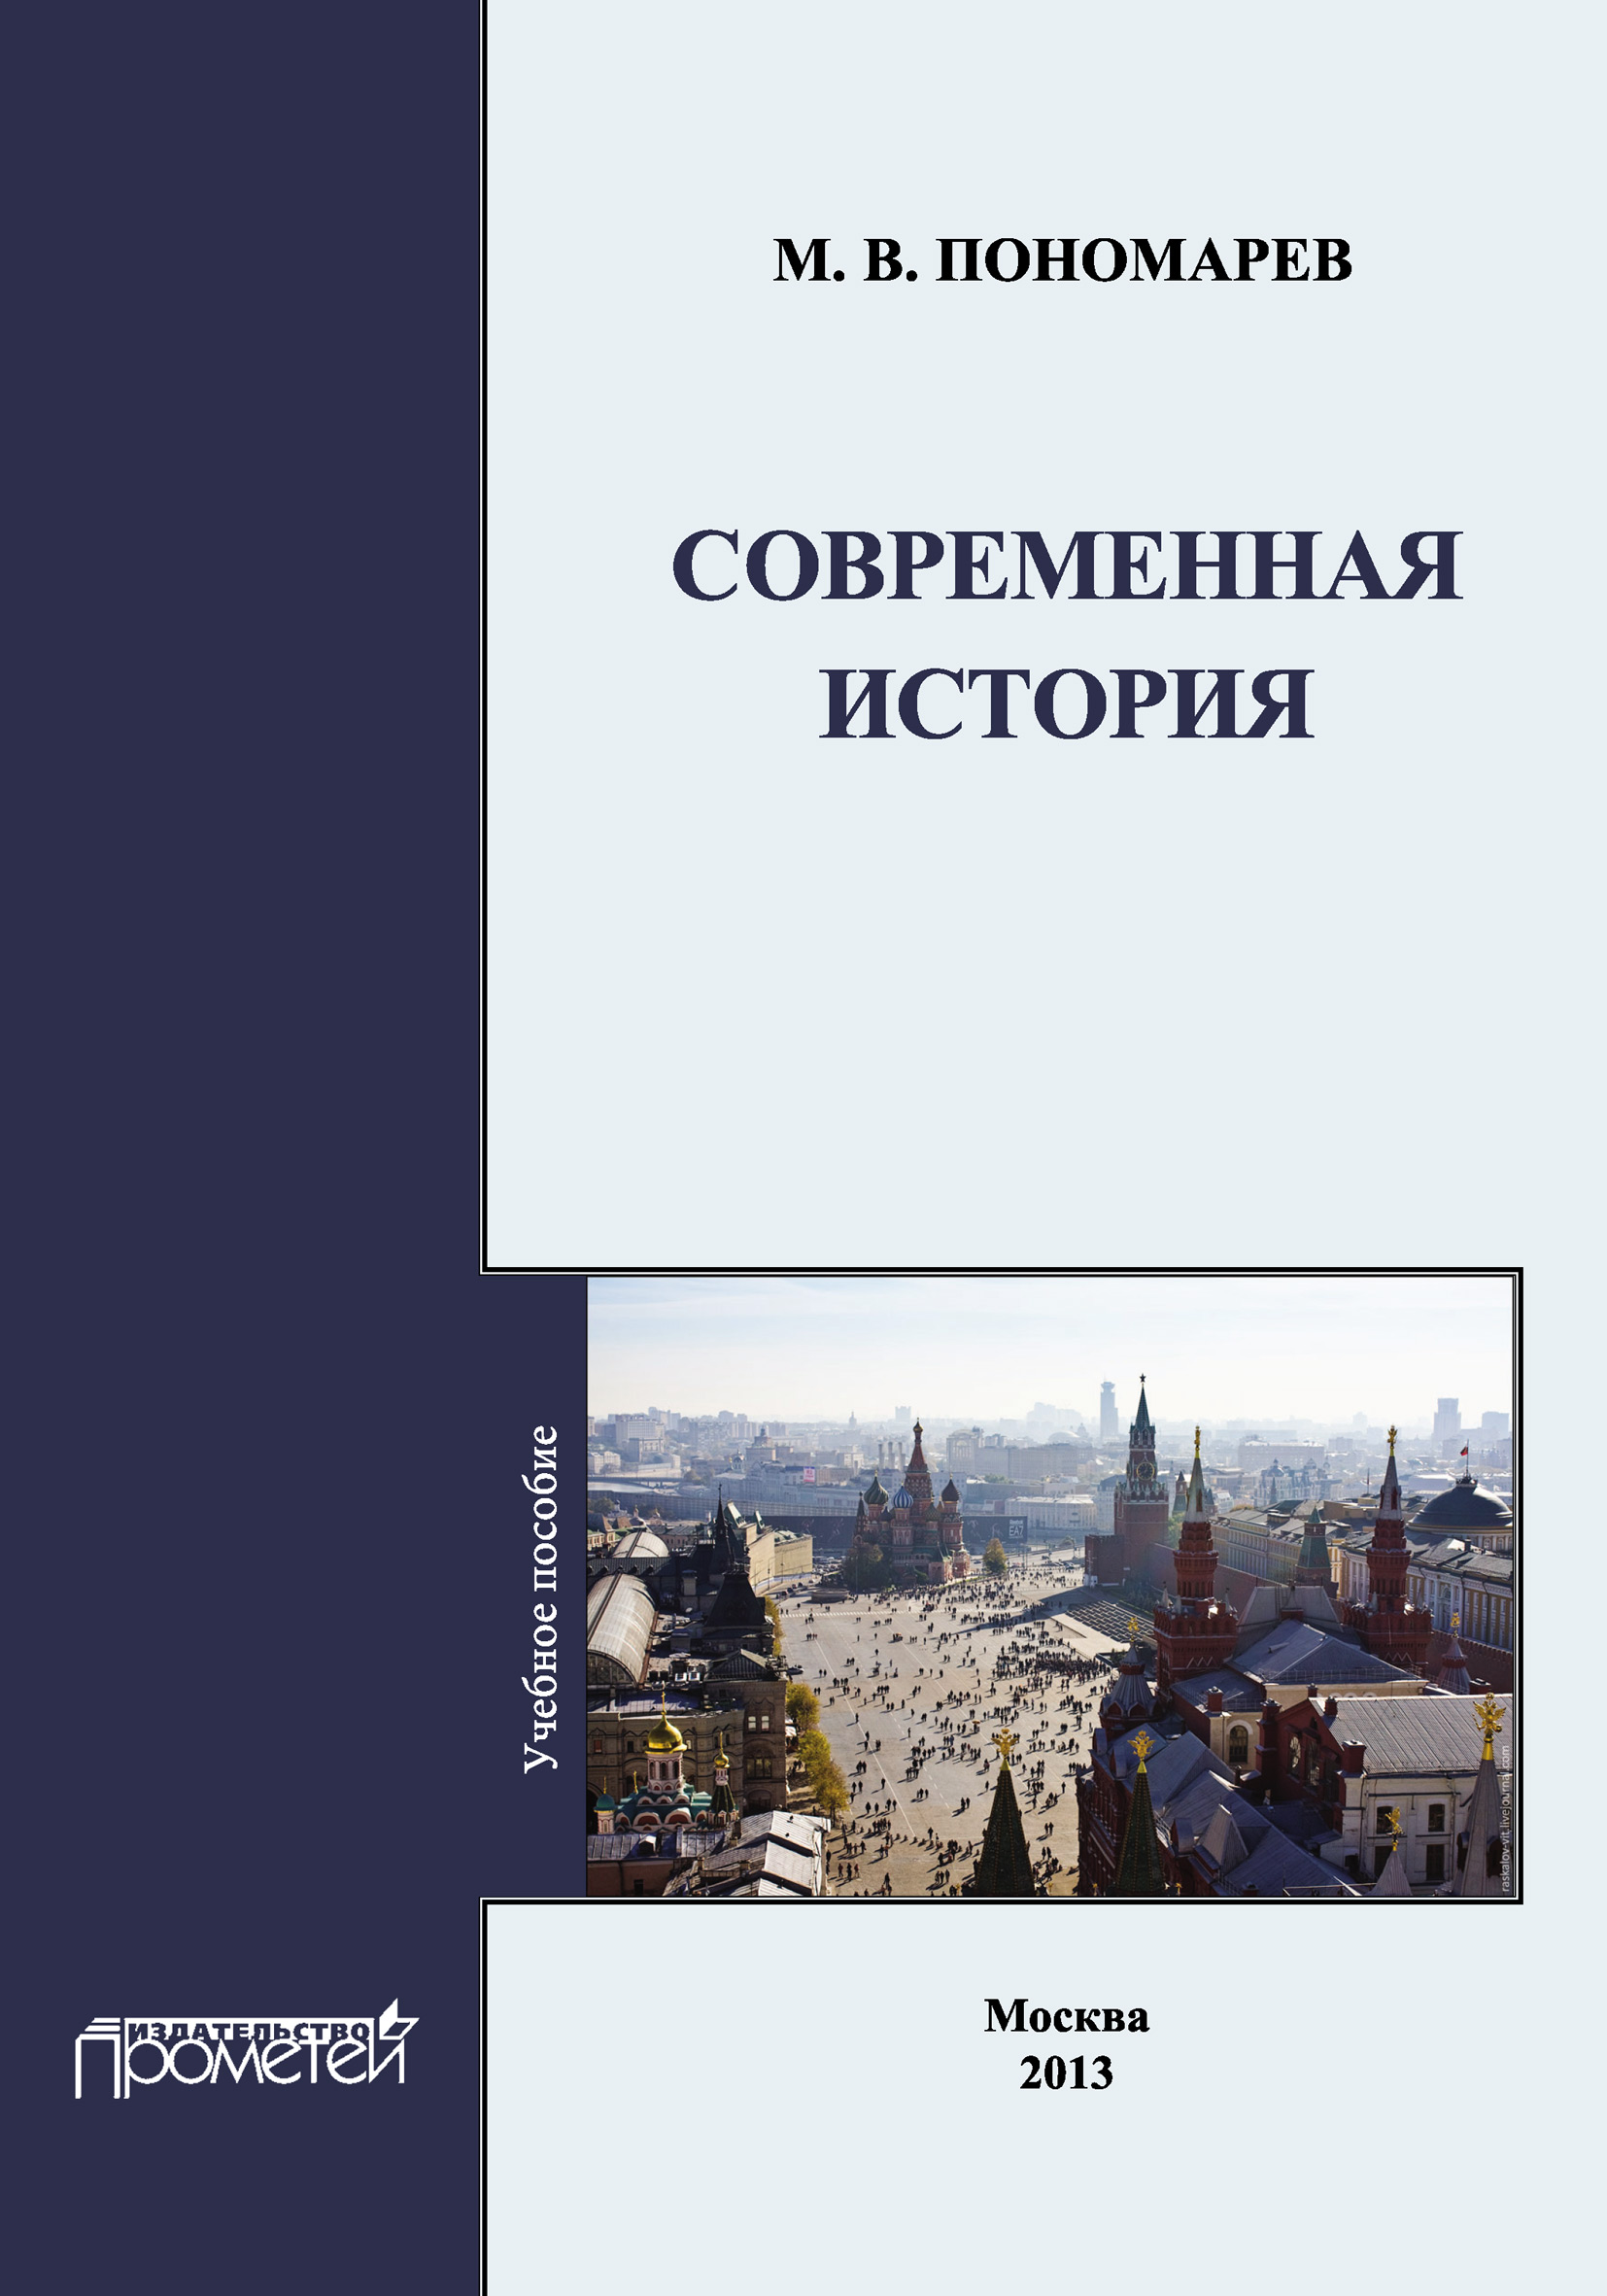 Книга Современная история из серии , созданная М. Пономарев, может относится к жанру История. Стоимость книги Современная история  с идентификатором 8886866 составляет 220.00 руб.